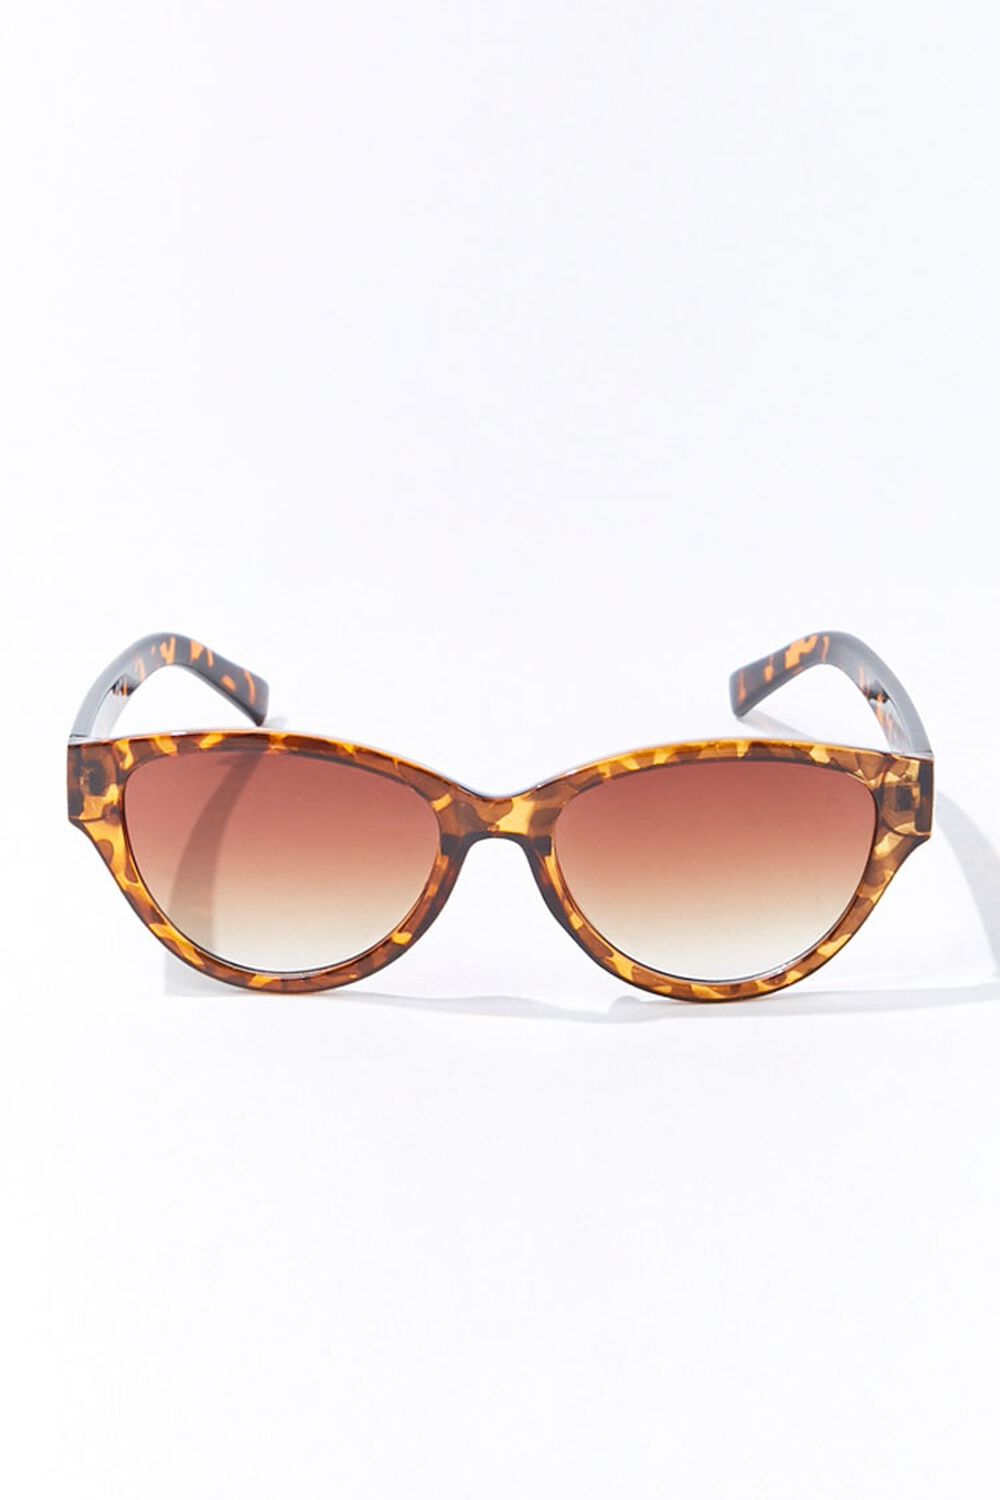 Tortoiseshell Oval Gradient Sunglasses, image 1